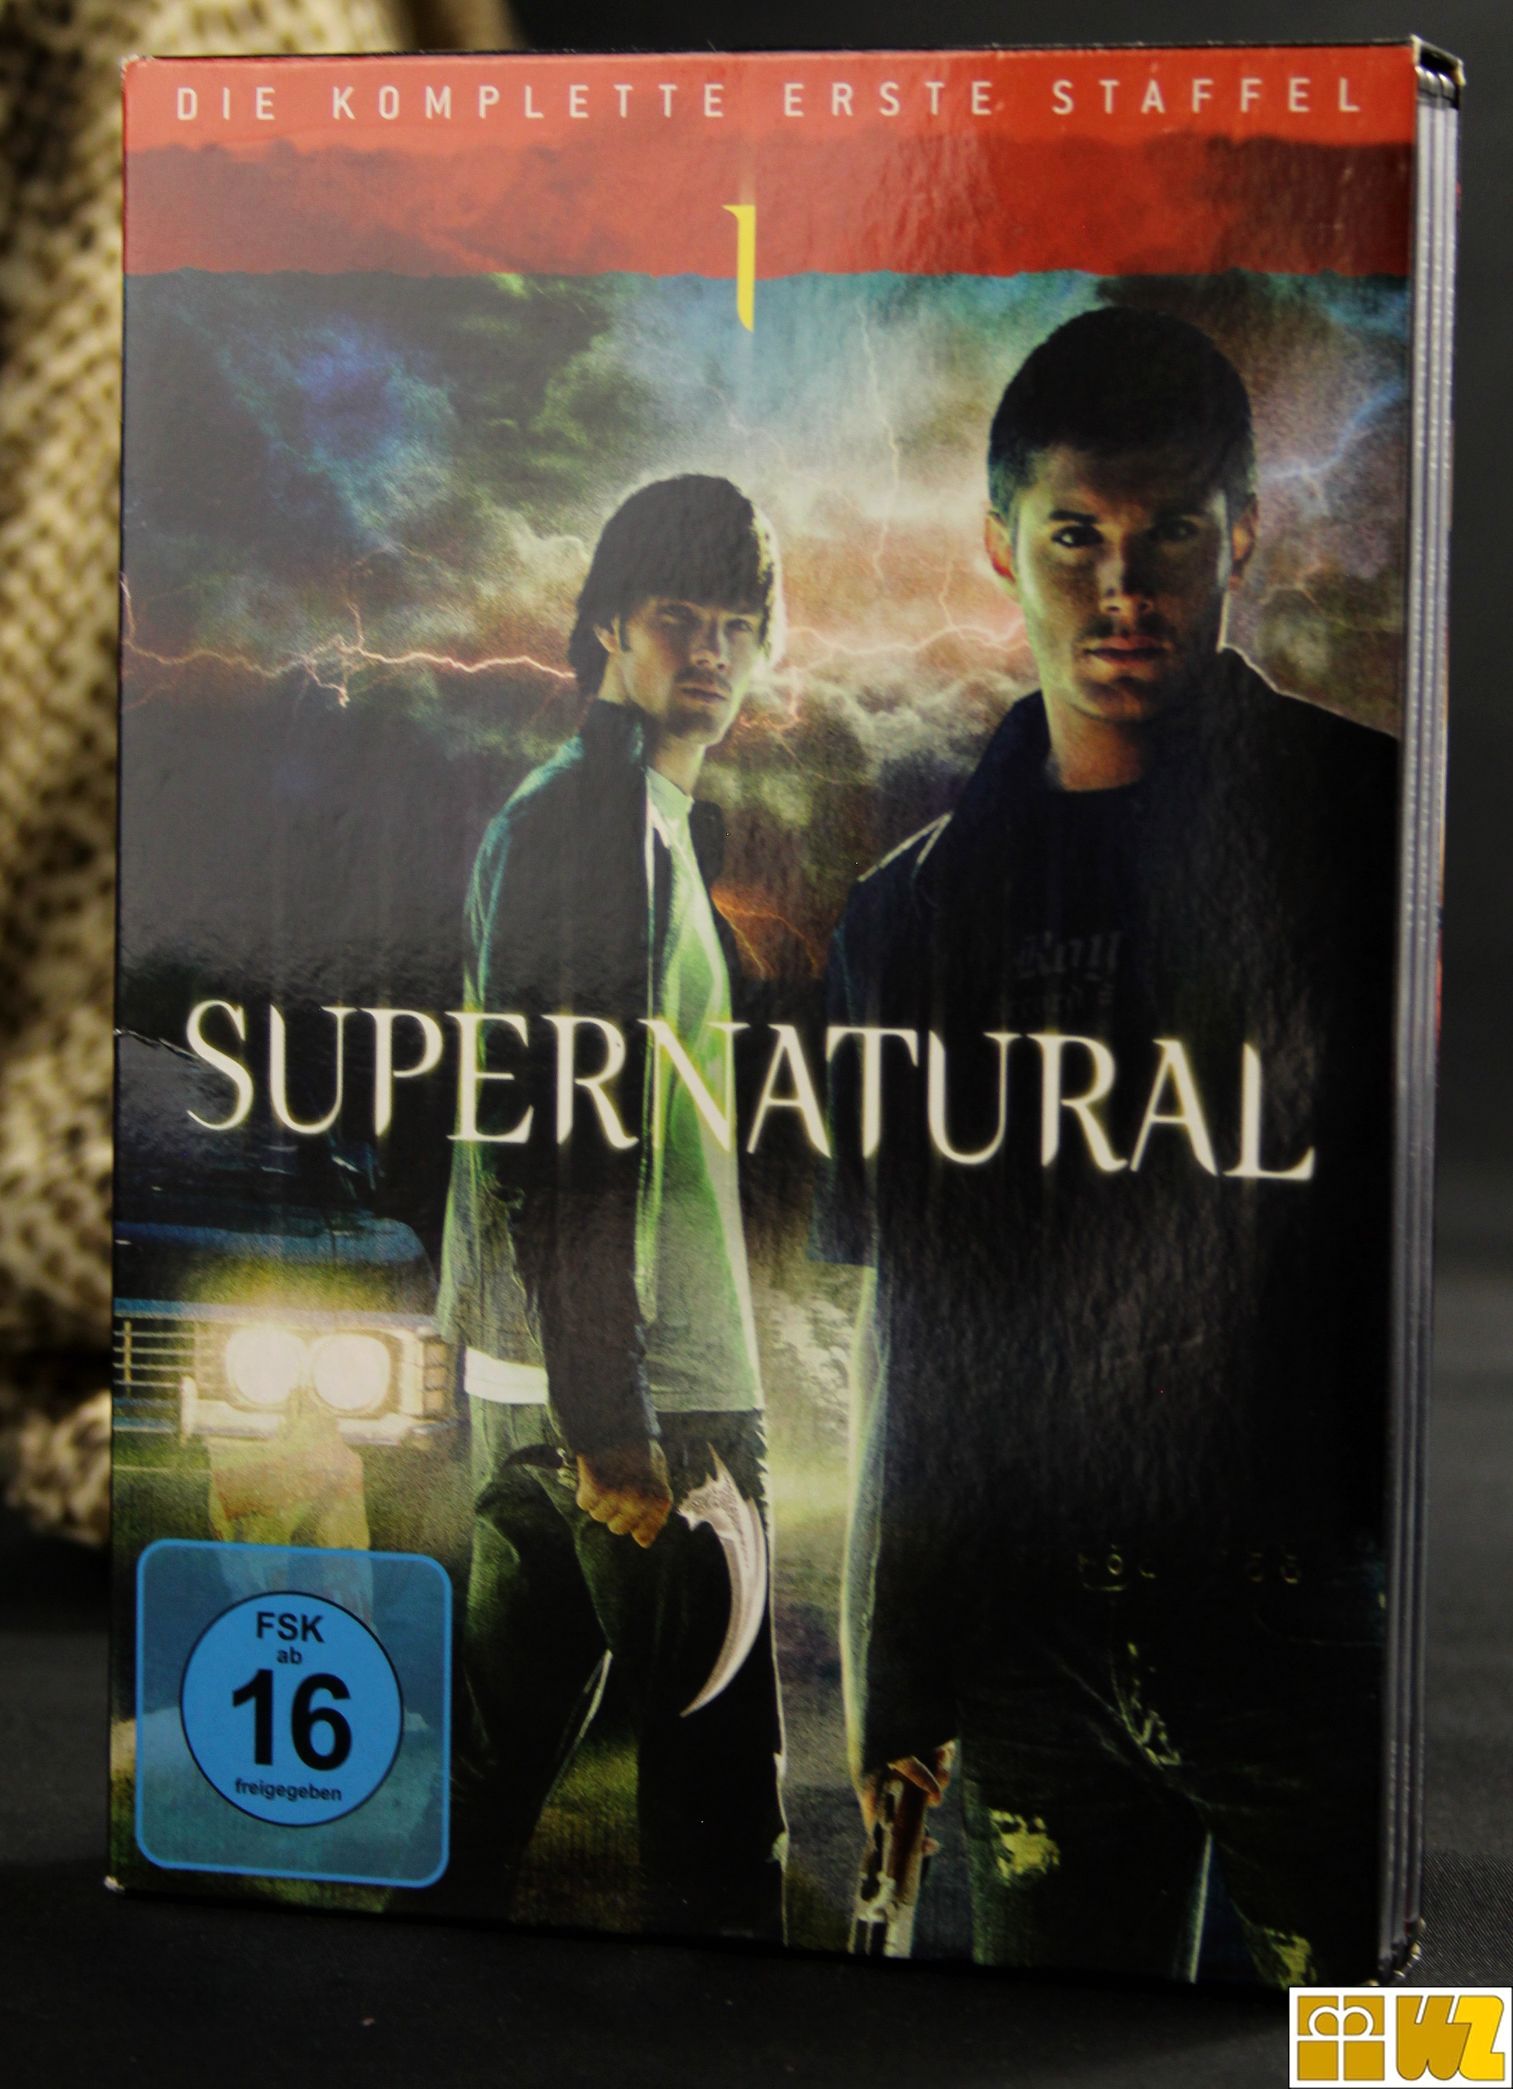 Supernatural Serie auf DVD in verschieden Staffeln zur Auswahl, gebr.